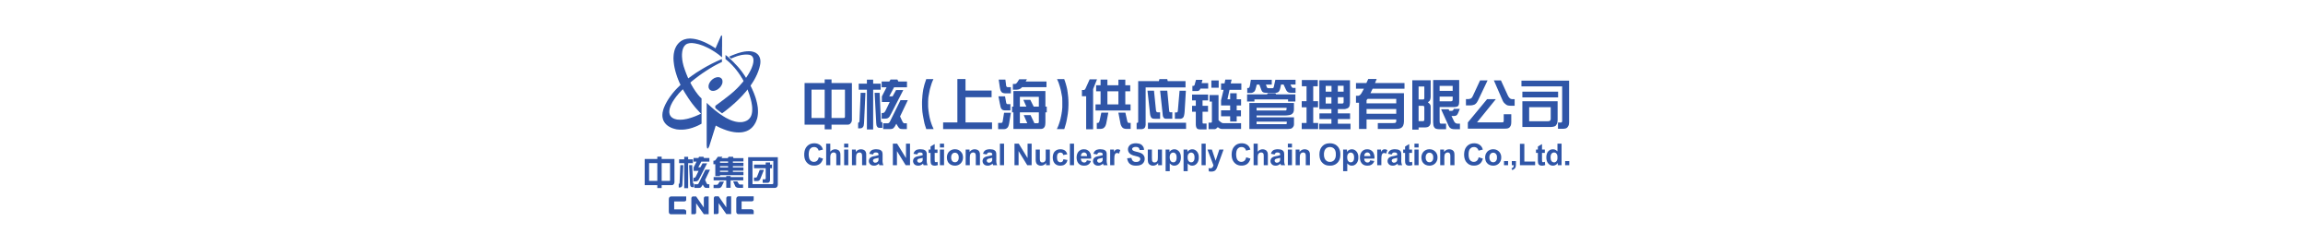 中核供应链公司荣获CMMI3级、ISO27001双认证